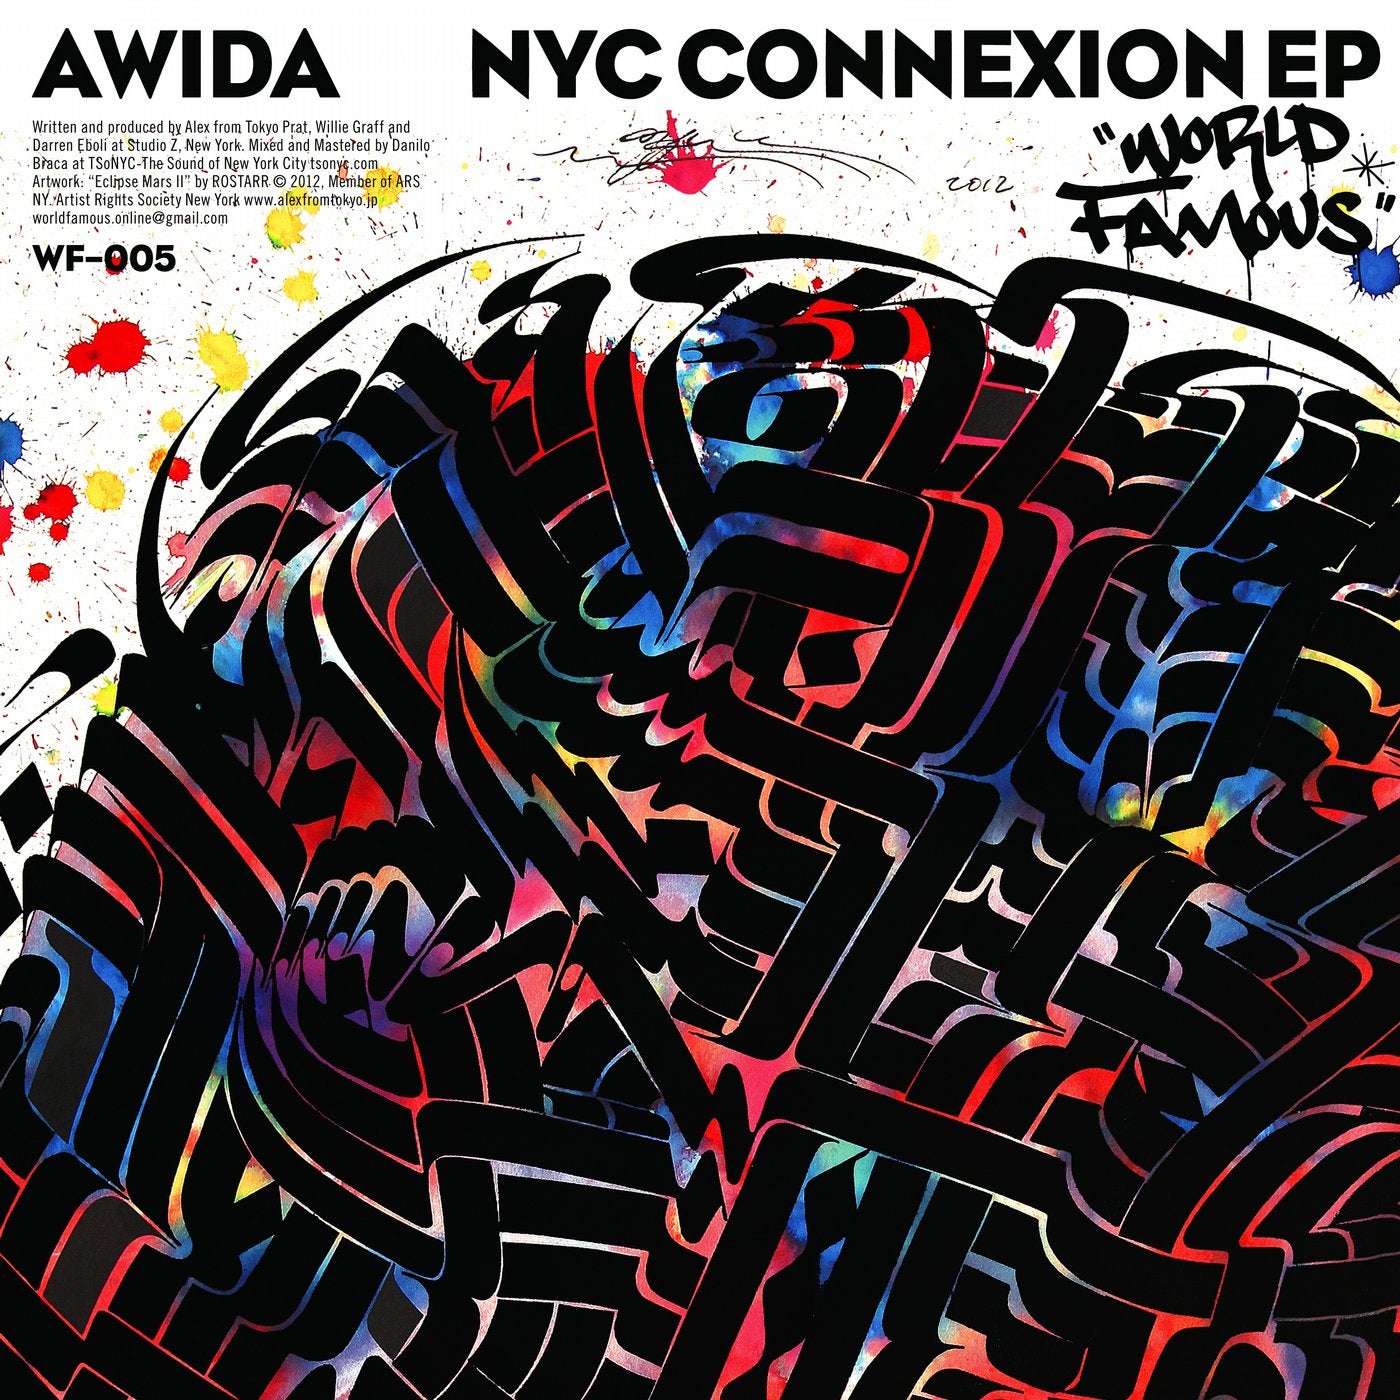 NYC Connexion EP